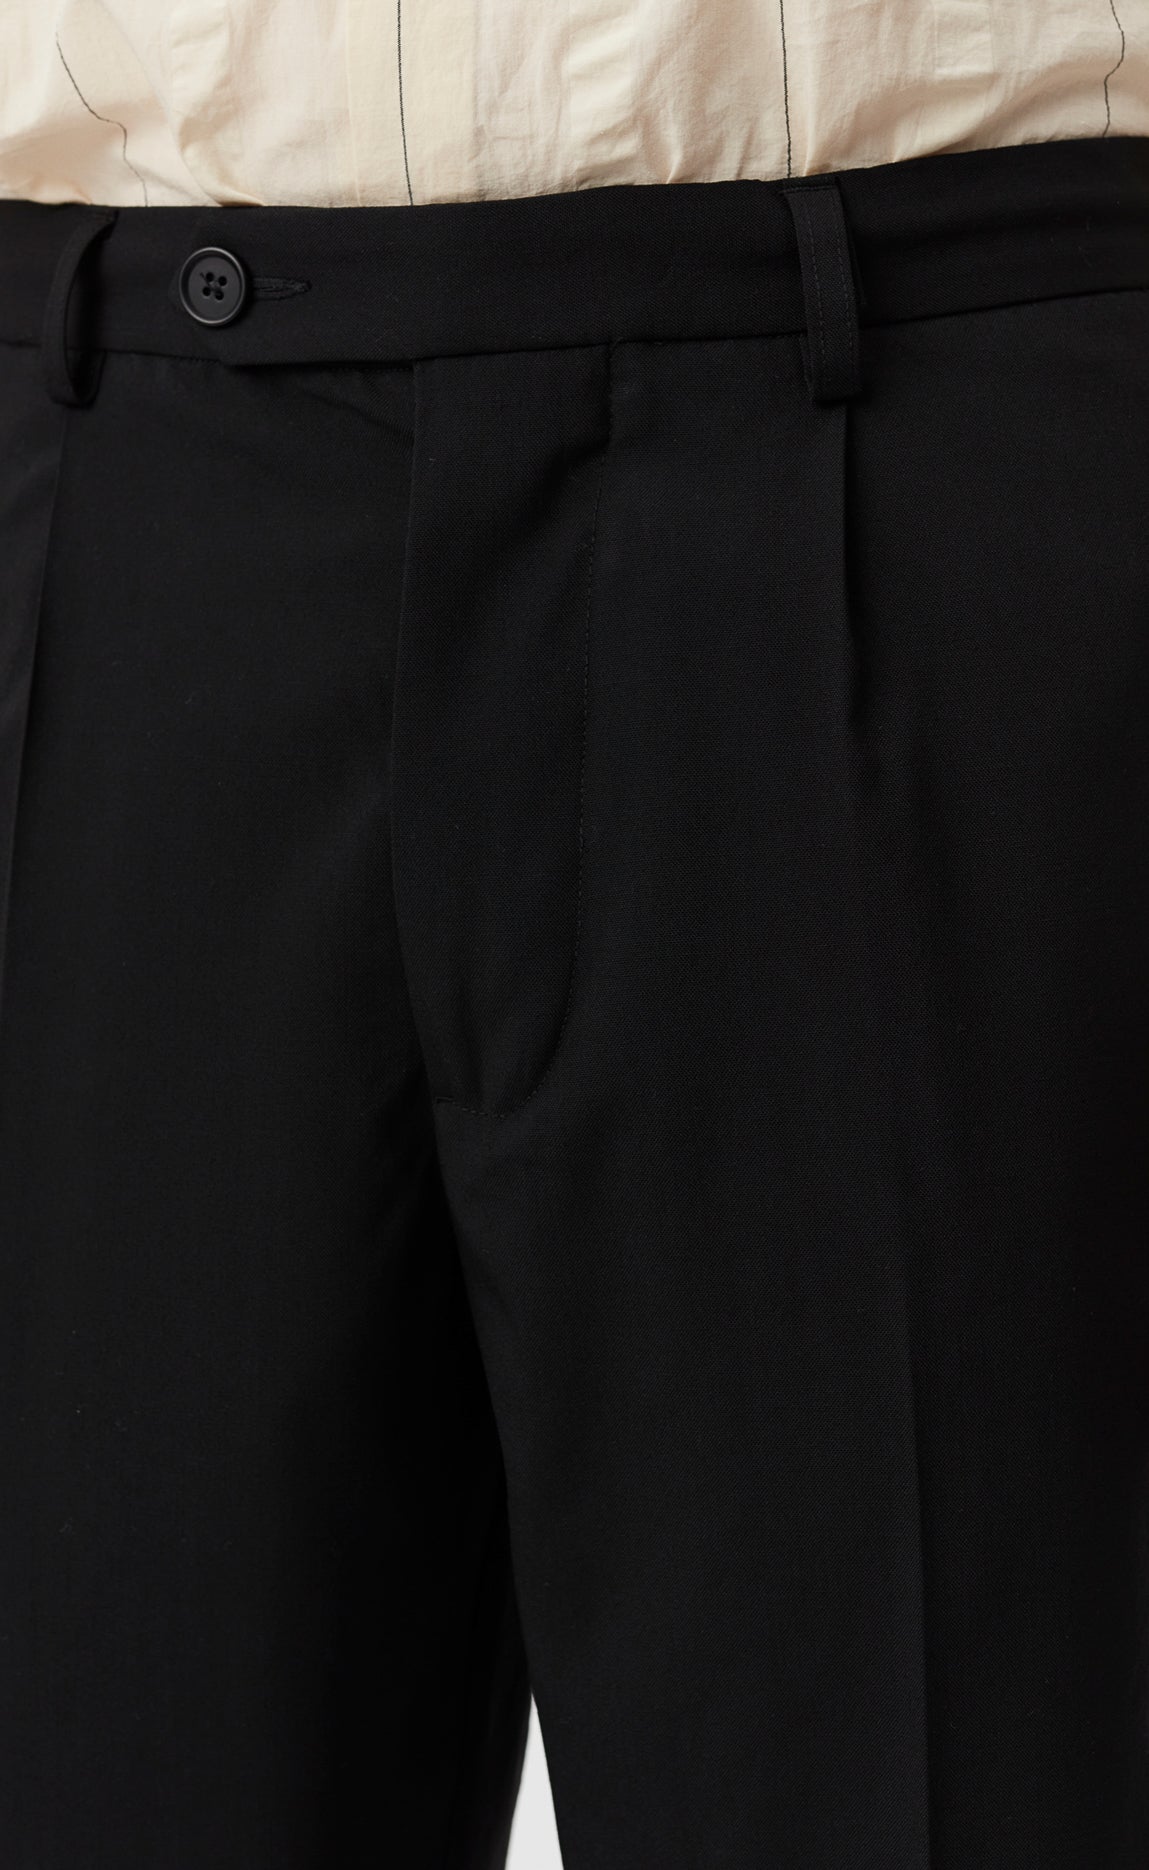 Formal Trousers - Black Wool